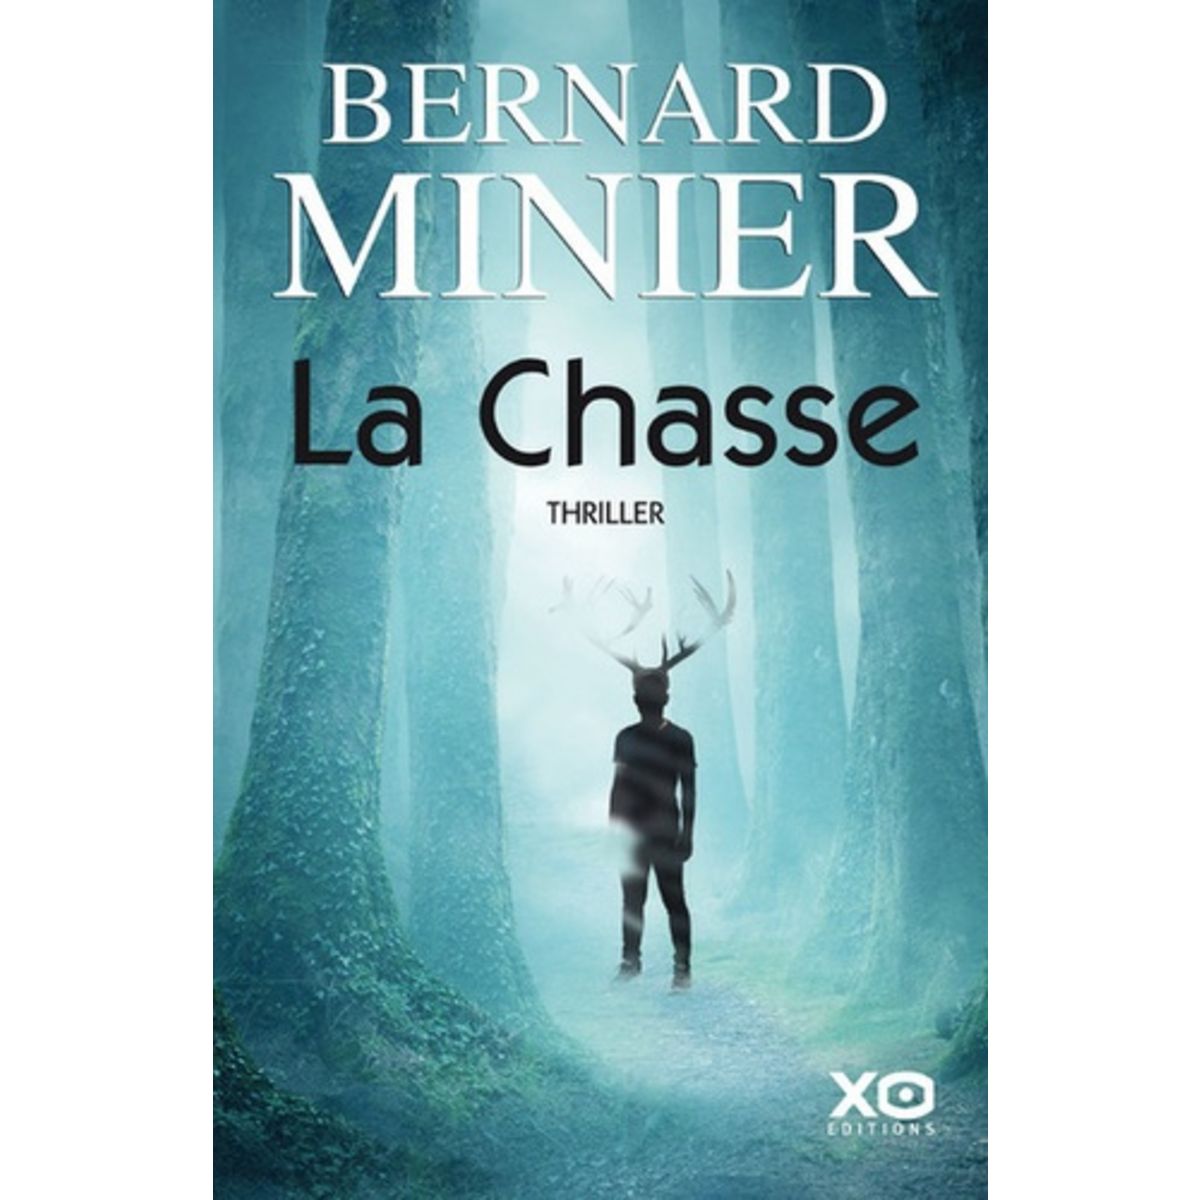  LA CHASSE, Minier Bernard